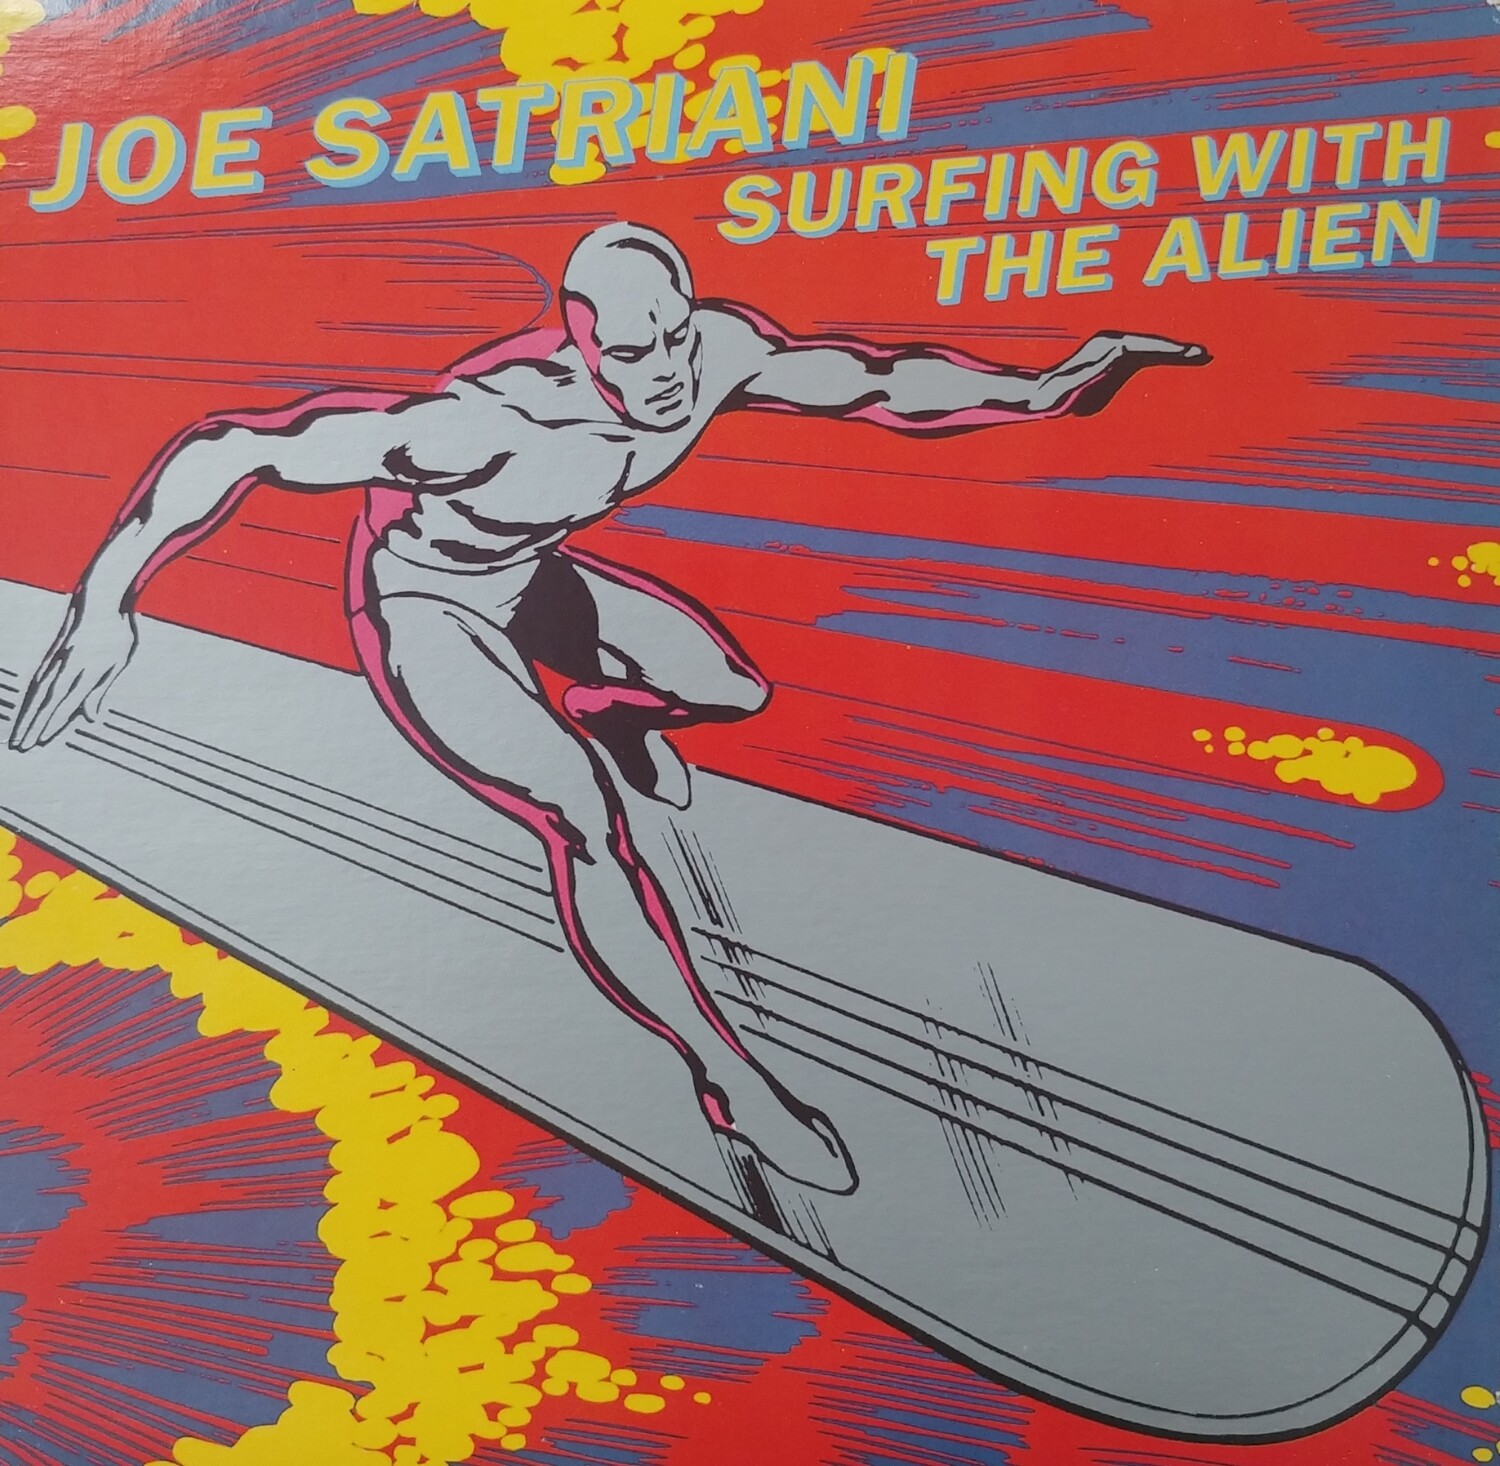 Joe Satriani - Surfing with the alien